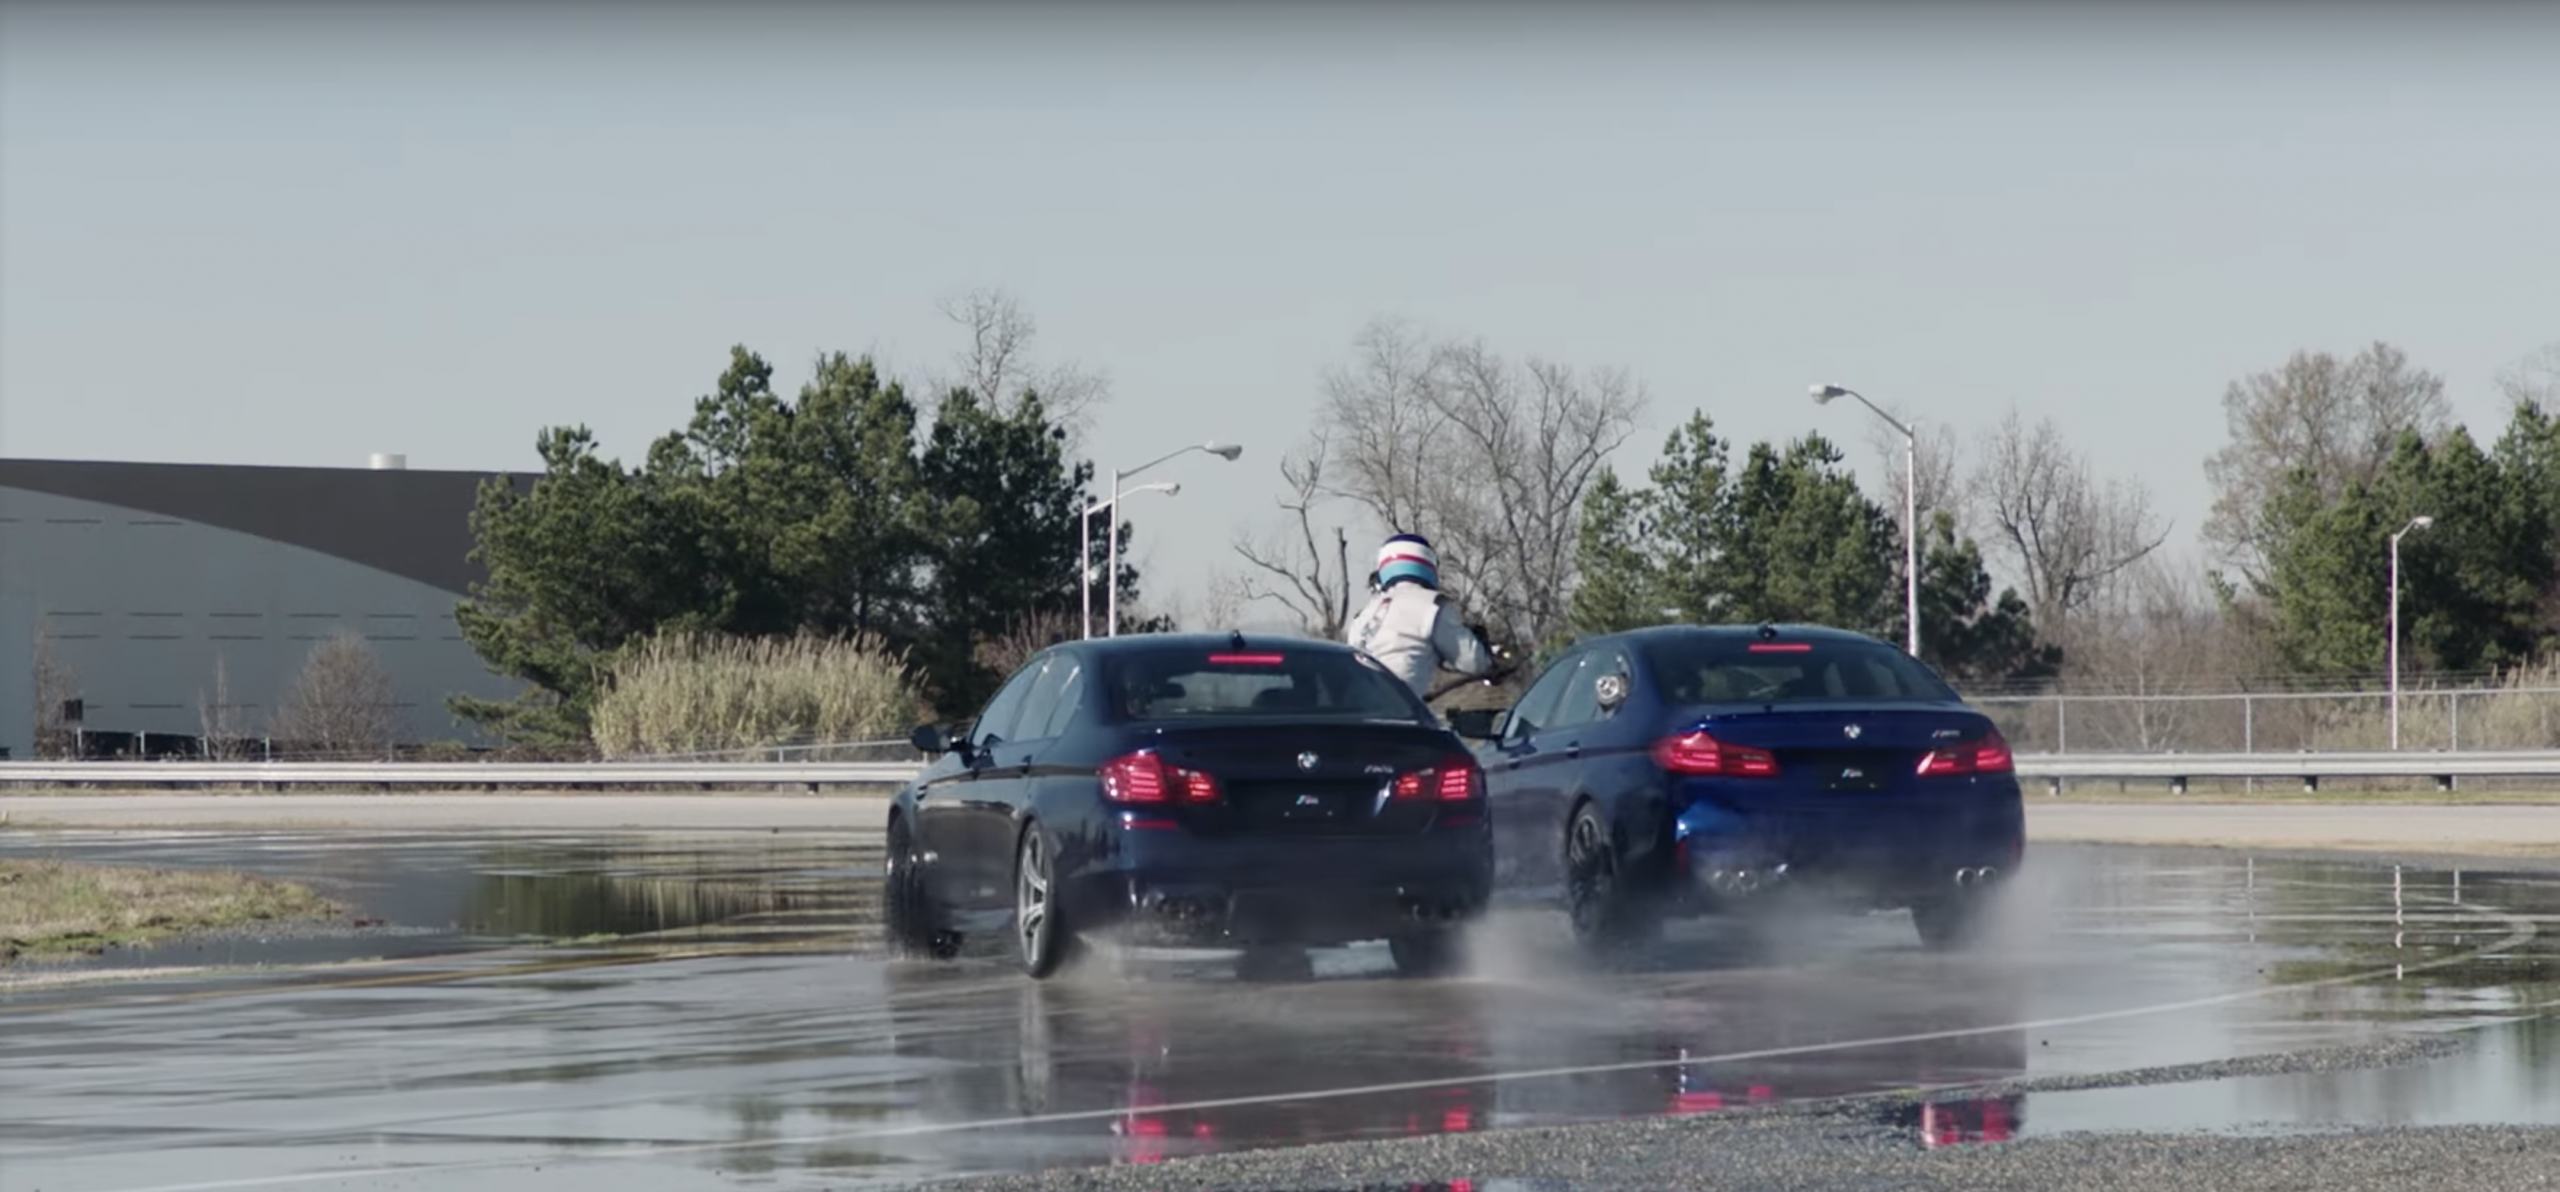 Recorde drift mais longo BMW M5 2018 Guinness Book